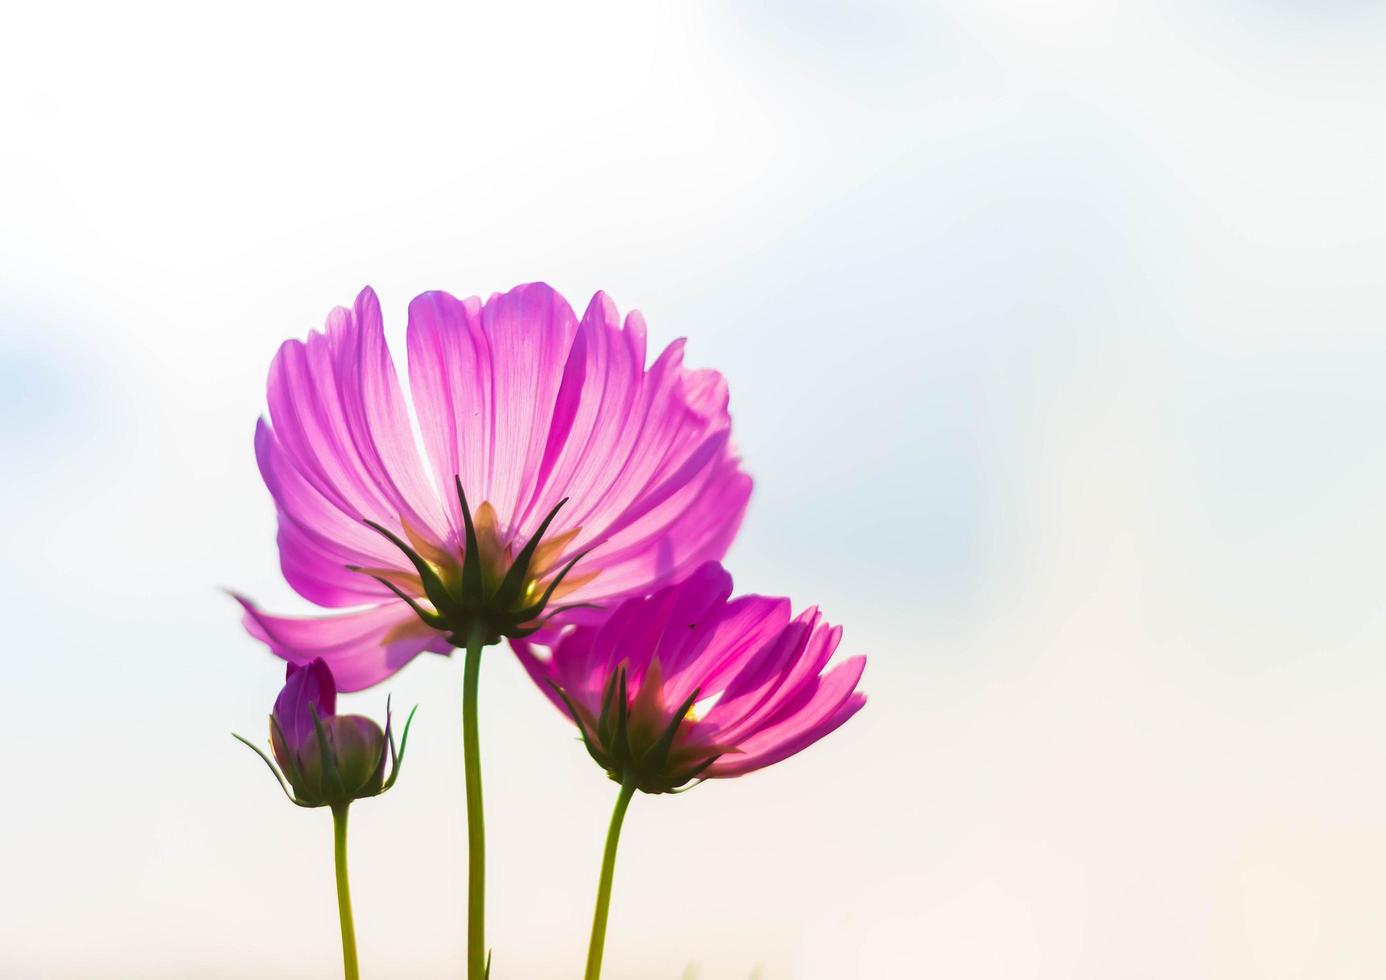 flor de cosmos rosa em plena floração foto